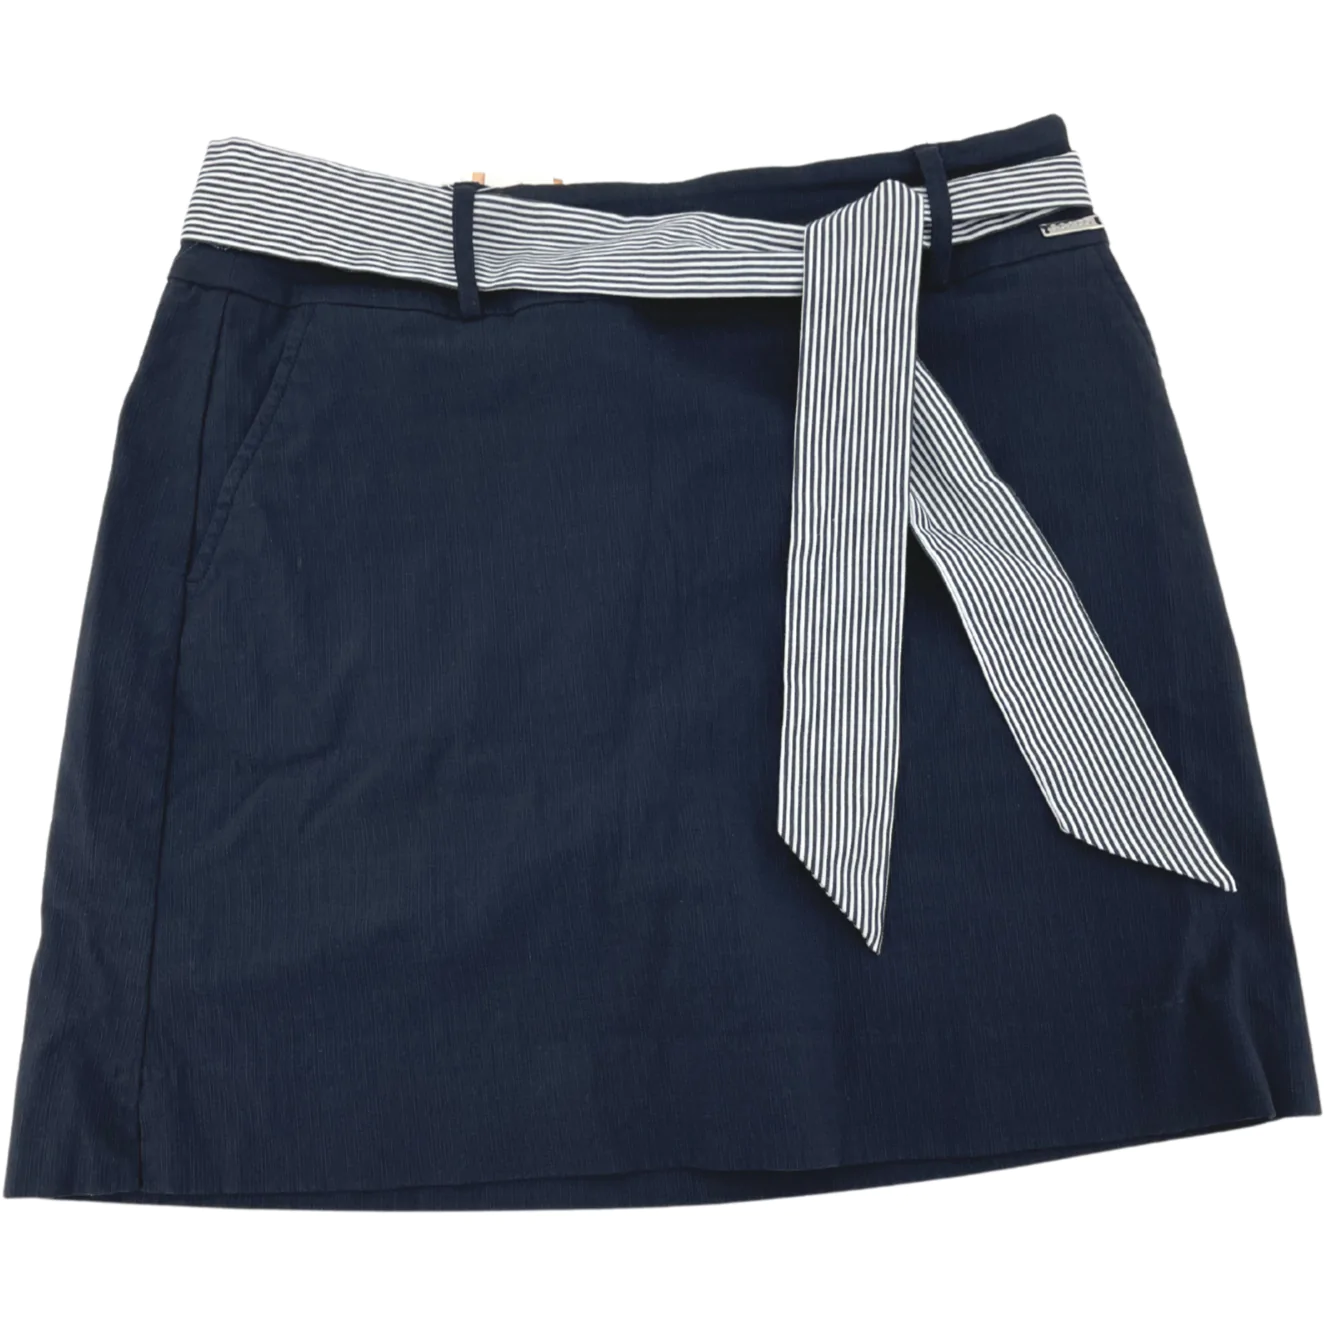 S.C & Co. Women's Skort / Skirt with Belt / Navy / Various Sizes